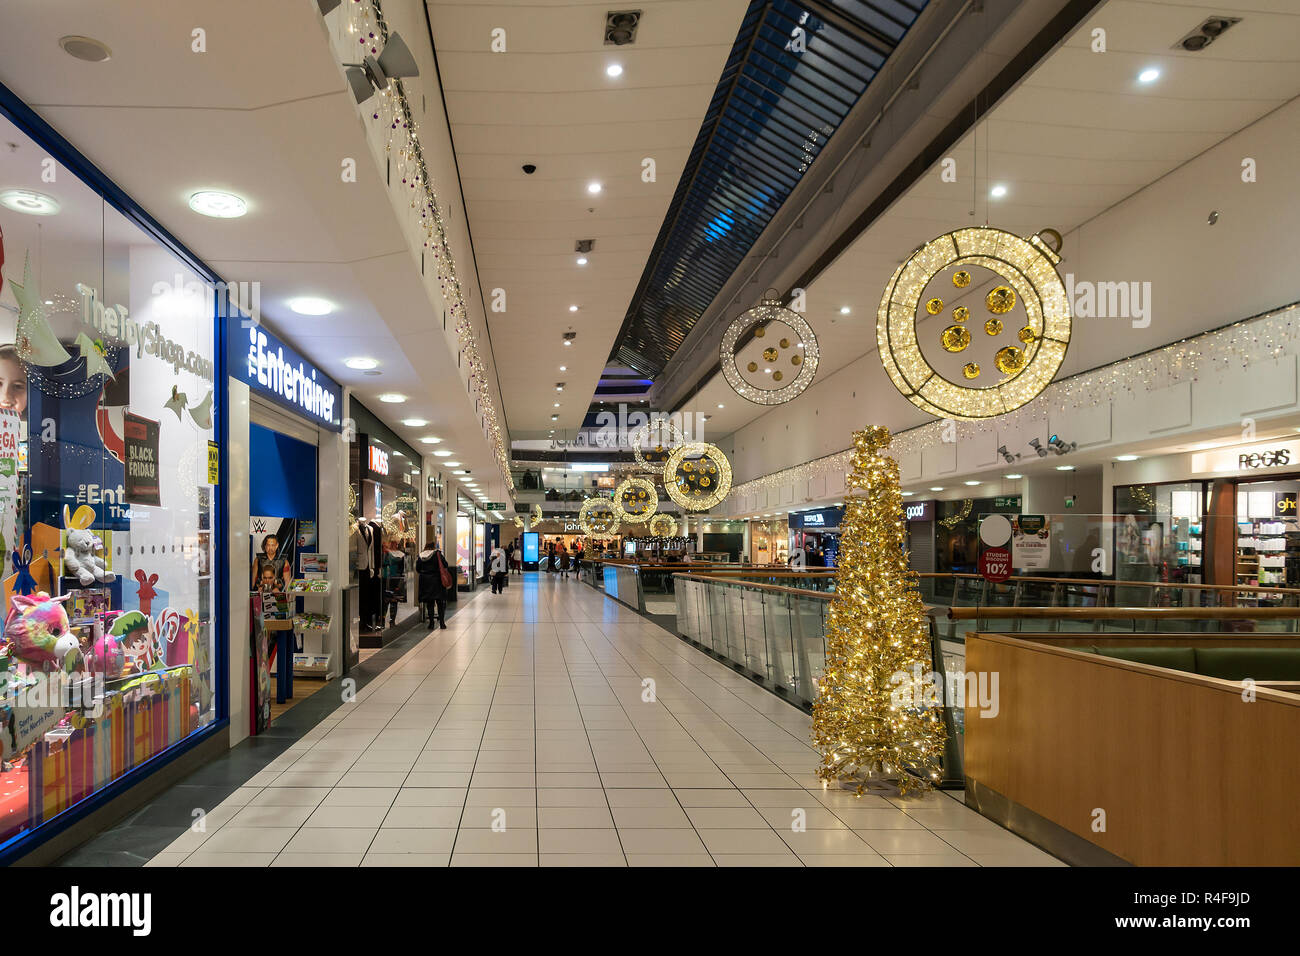 Une section de galeries Buchan shopping mall dans le centre de Glasgow, Ecosse, décorée pour Noël. La boutique d'ancrage, John Lewis, est à l'extrême tr Banque D'Images